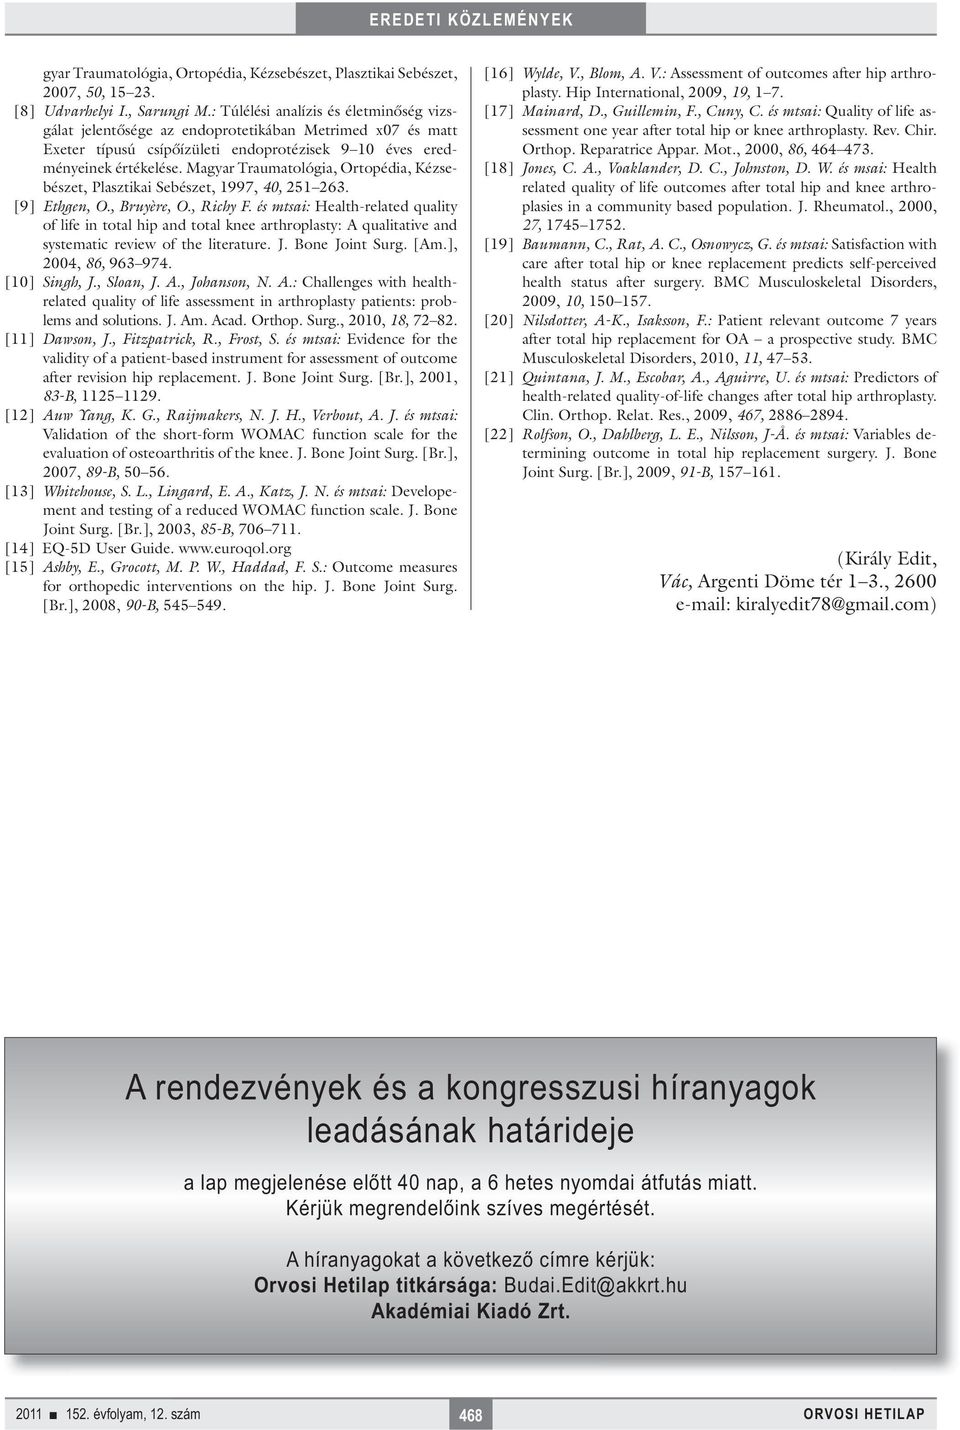 Magyar Traumatológia, Ortopédia, Kézsebészet, Plasztikai Sebészet, 1997, 40, 251 263. [9] Ethgen, O., Bruyère, O., Richy F.